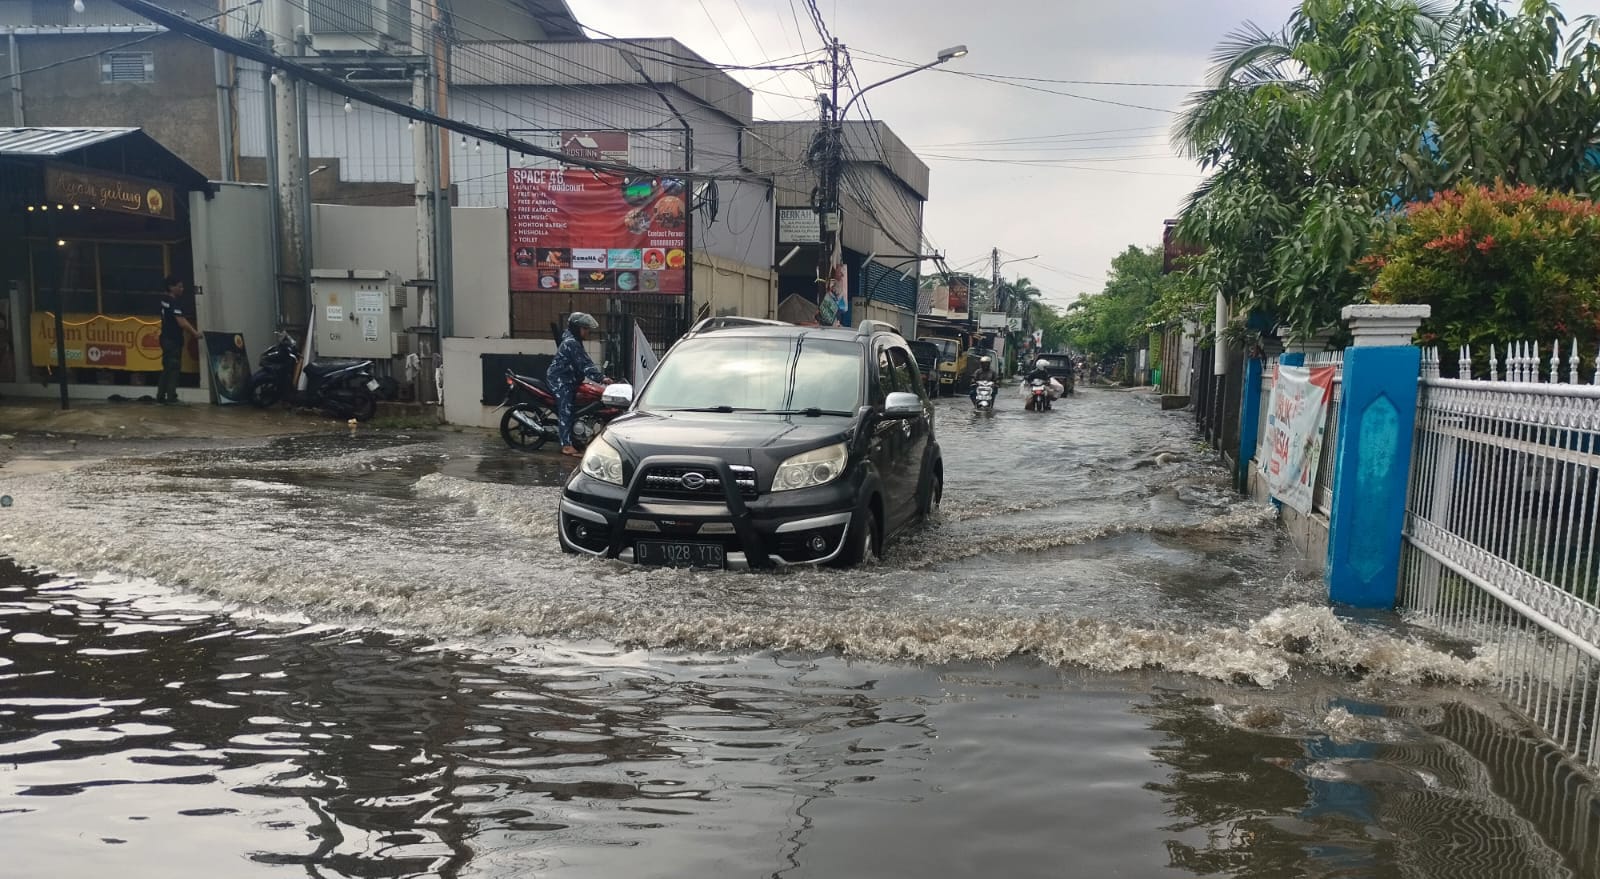 Banjir yang melanda Cingised, Kota Bandung beberapa waktu lalu.